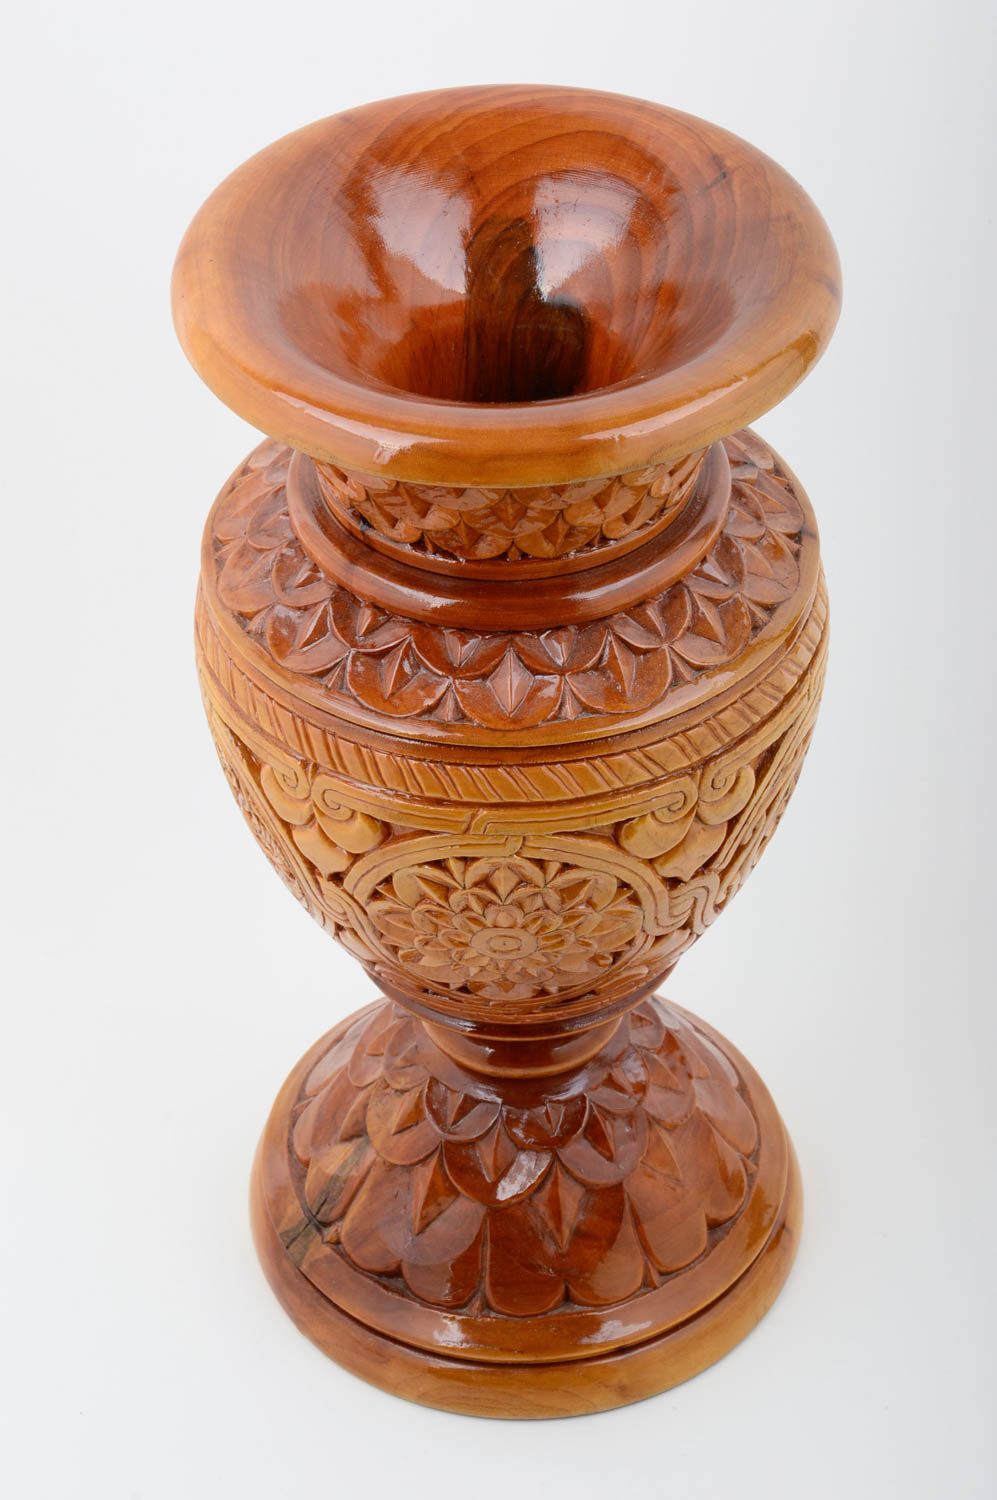 Deko Vase Tisch Deko Handmade Wohnzimmer Deko Holz Vase geschnitzt groß schön foto 2